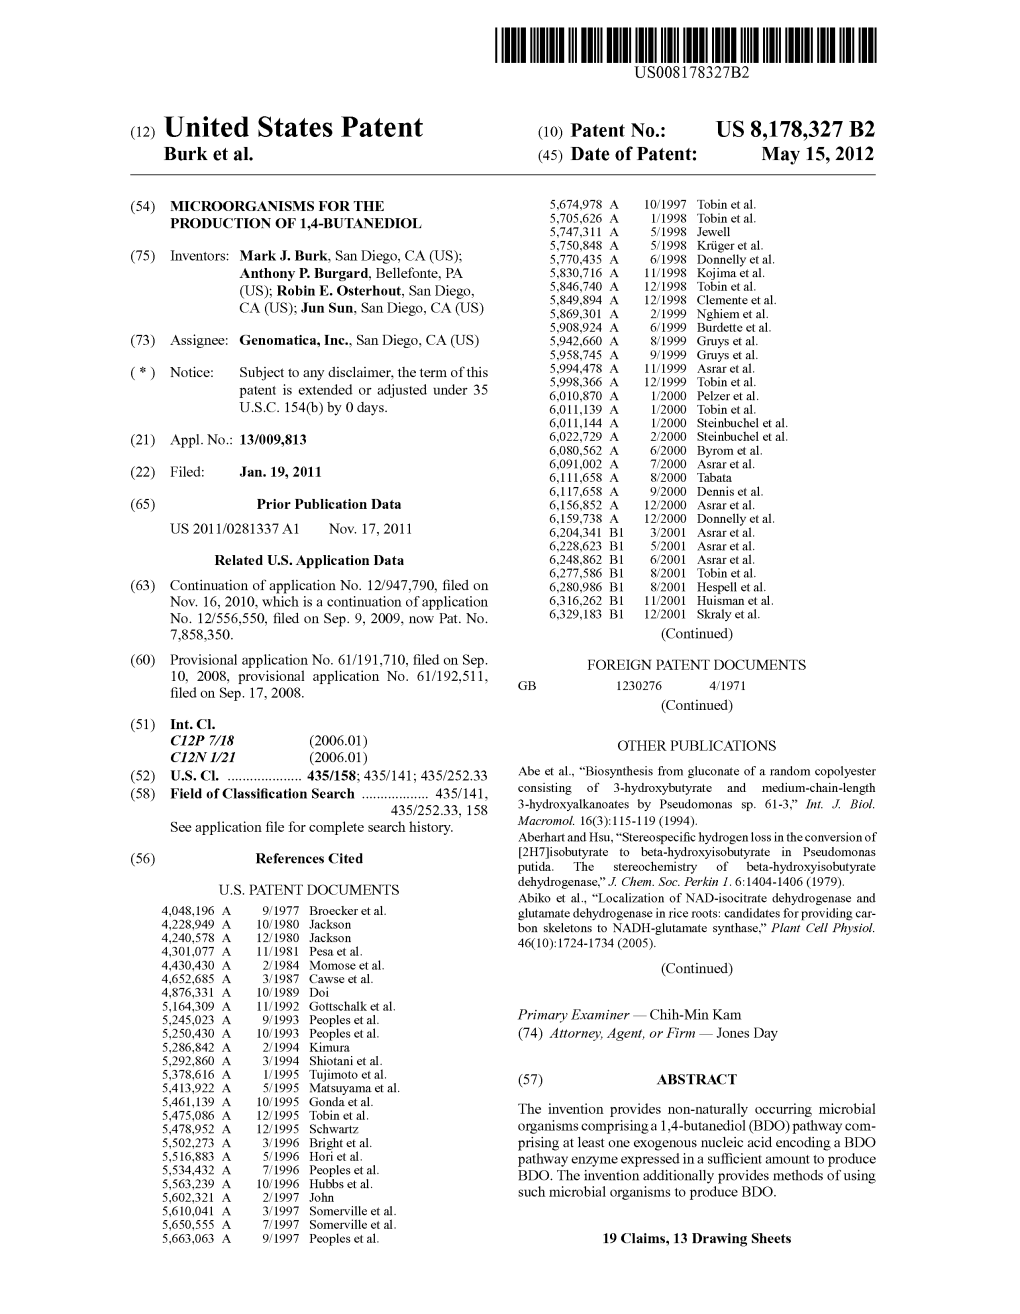 (12) United States Patent (10) Patent No.: US 8,178,327 B2 Burk Et Al